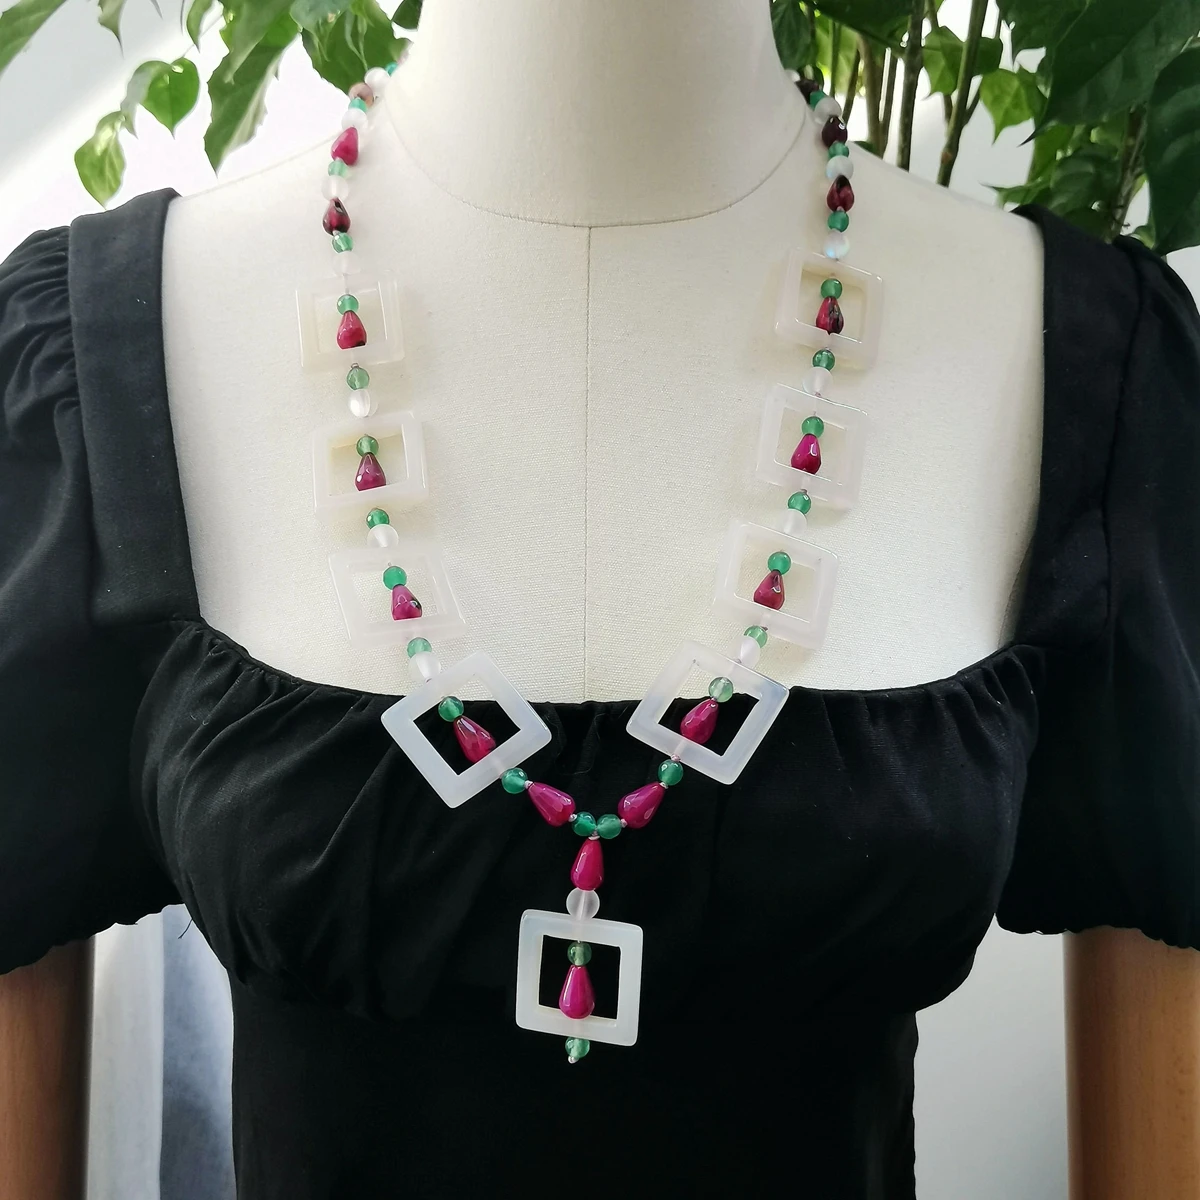 

Ожерелье Lii Ji из натурального камня разных цветов, Женское Ожерелье из белого, ярко-розового, зеленого агата, 64 см, акция, распродажа, ювелирн...